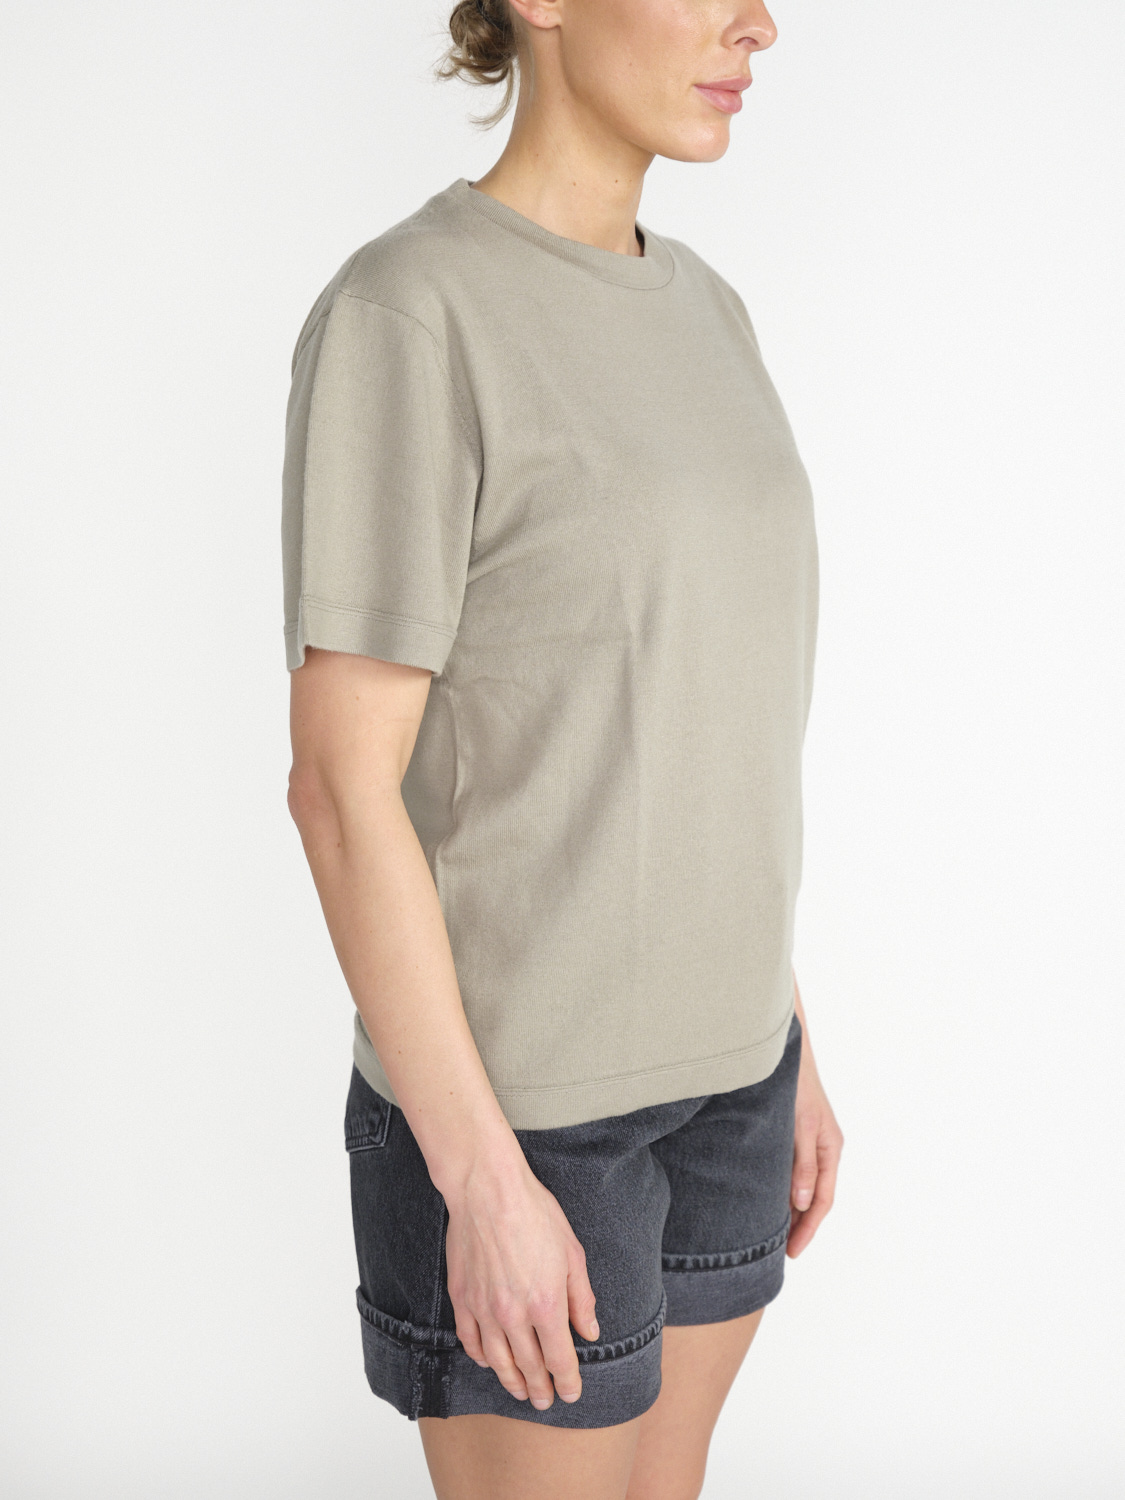 Extreme Cashmere n° 268 Cuba – weites T- Shirt aus Cashmere-Baumwollmischung hellgrün One Size